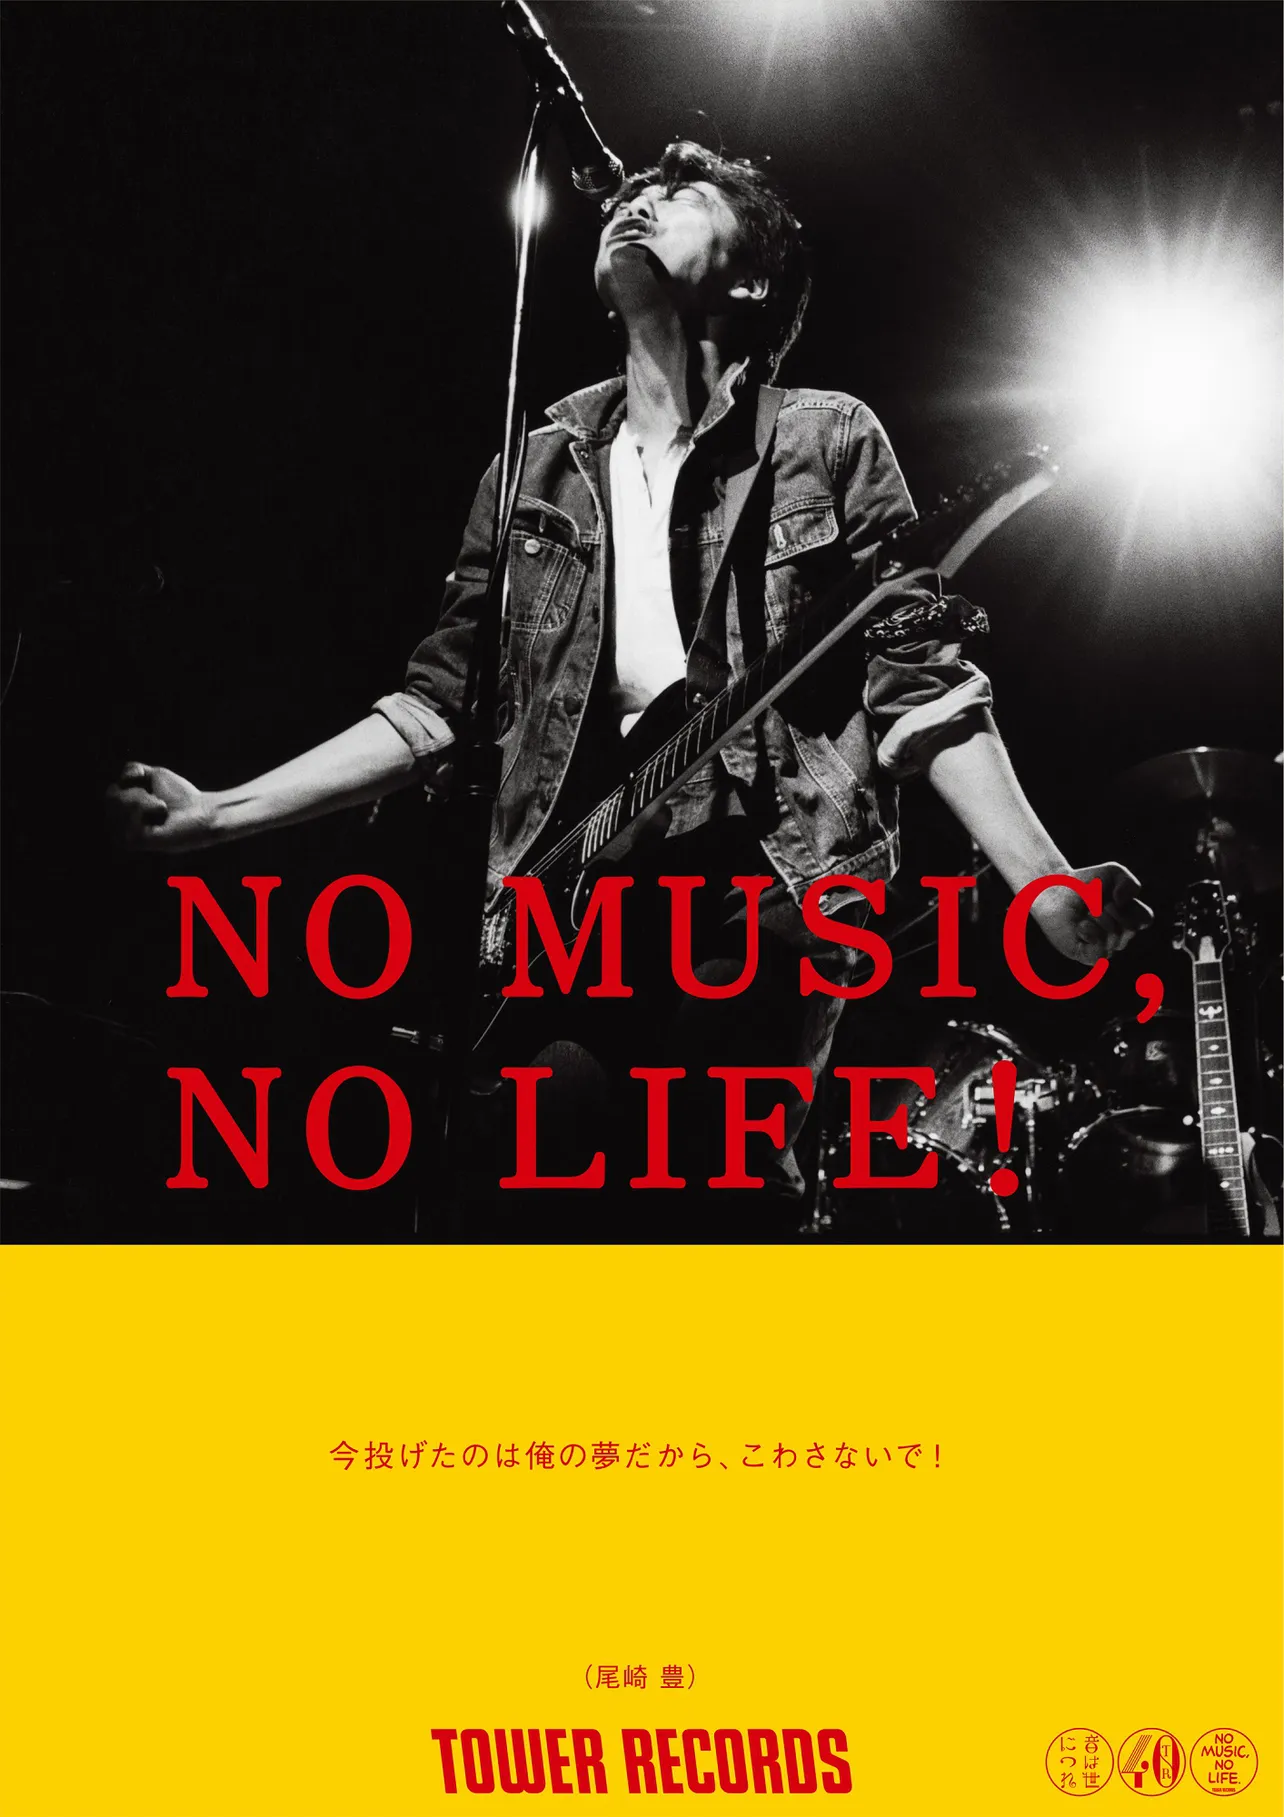 画像・写真 「NO MUSIC, NO LIFE」ポスターに尾崎豊が登場！ ファン